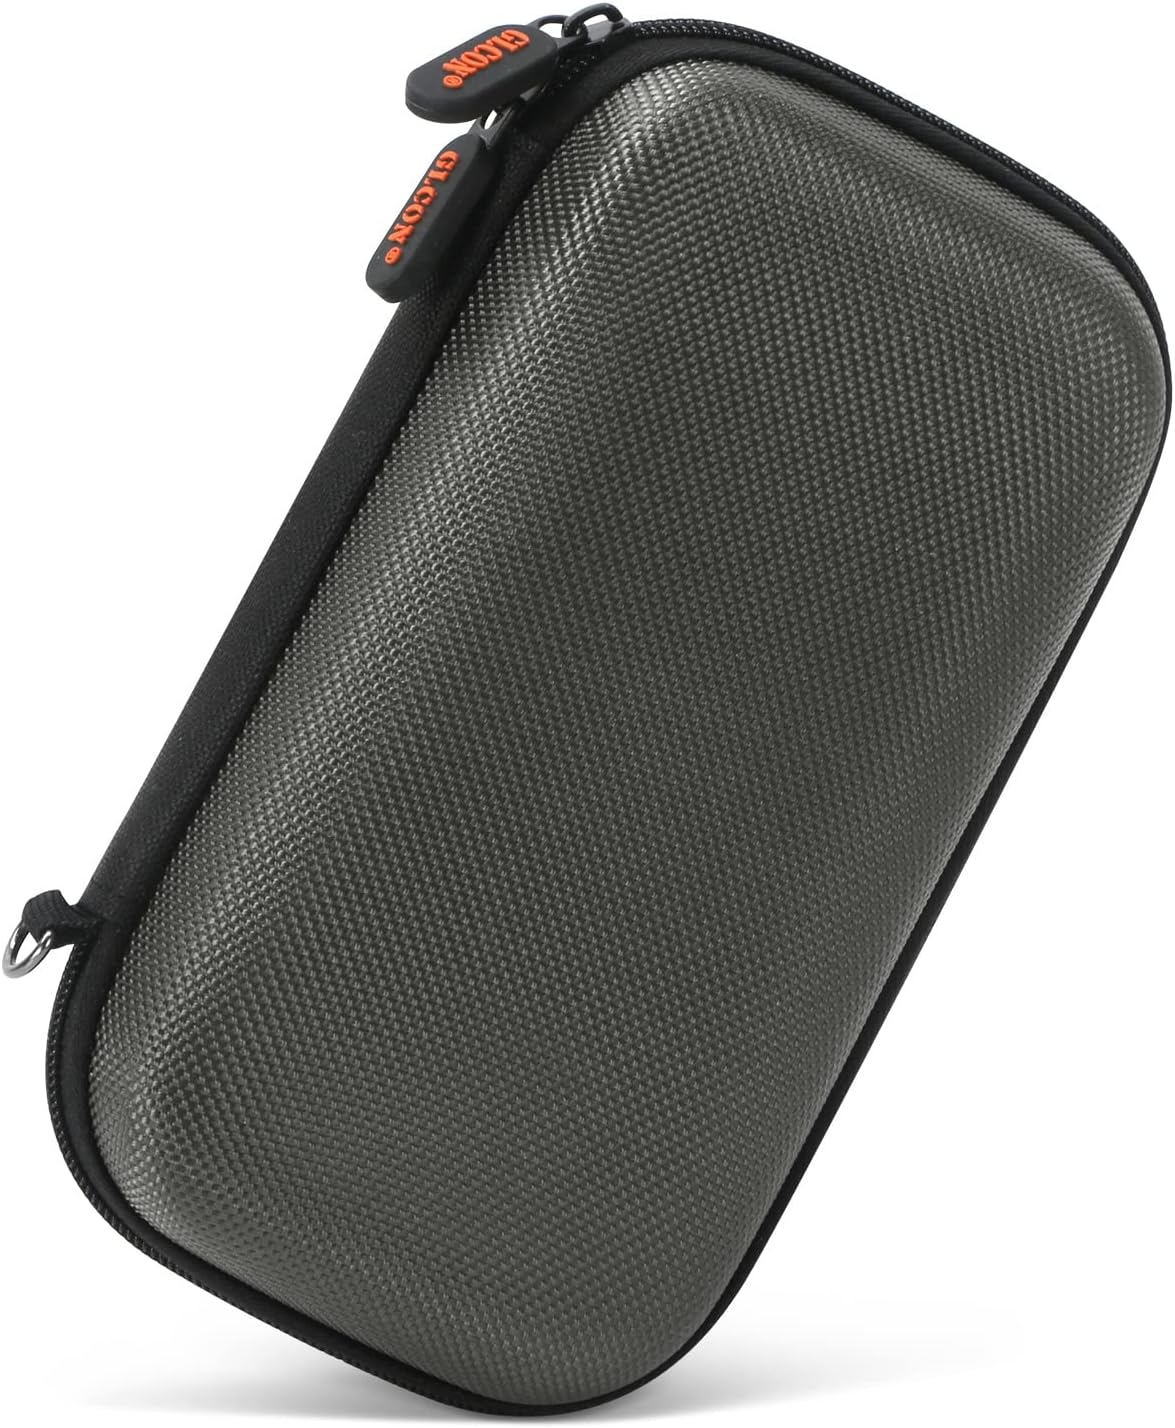 GLCON Dustproof Carrying Case Asesoris Éléktronik Cable Organizer - Portabel Leutik Travel Charger Case Power Bank Pouch Telepon - Double Zippers Dompét - Hard EVA Storage Bag Car...